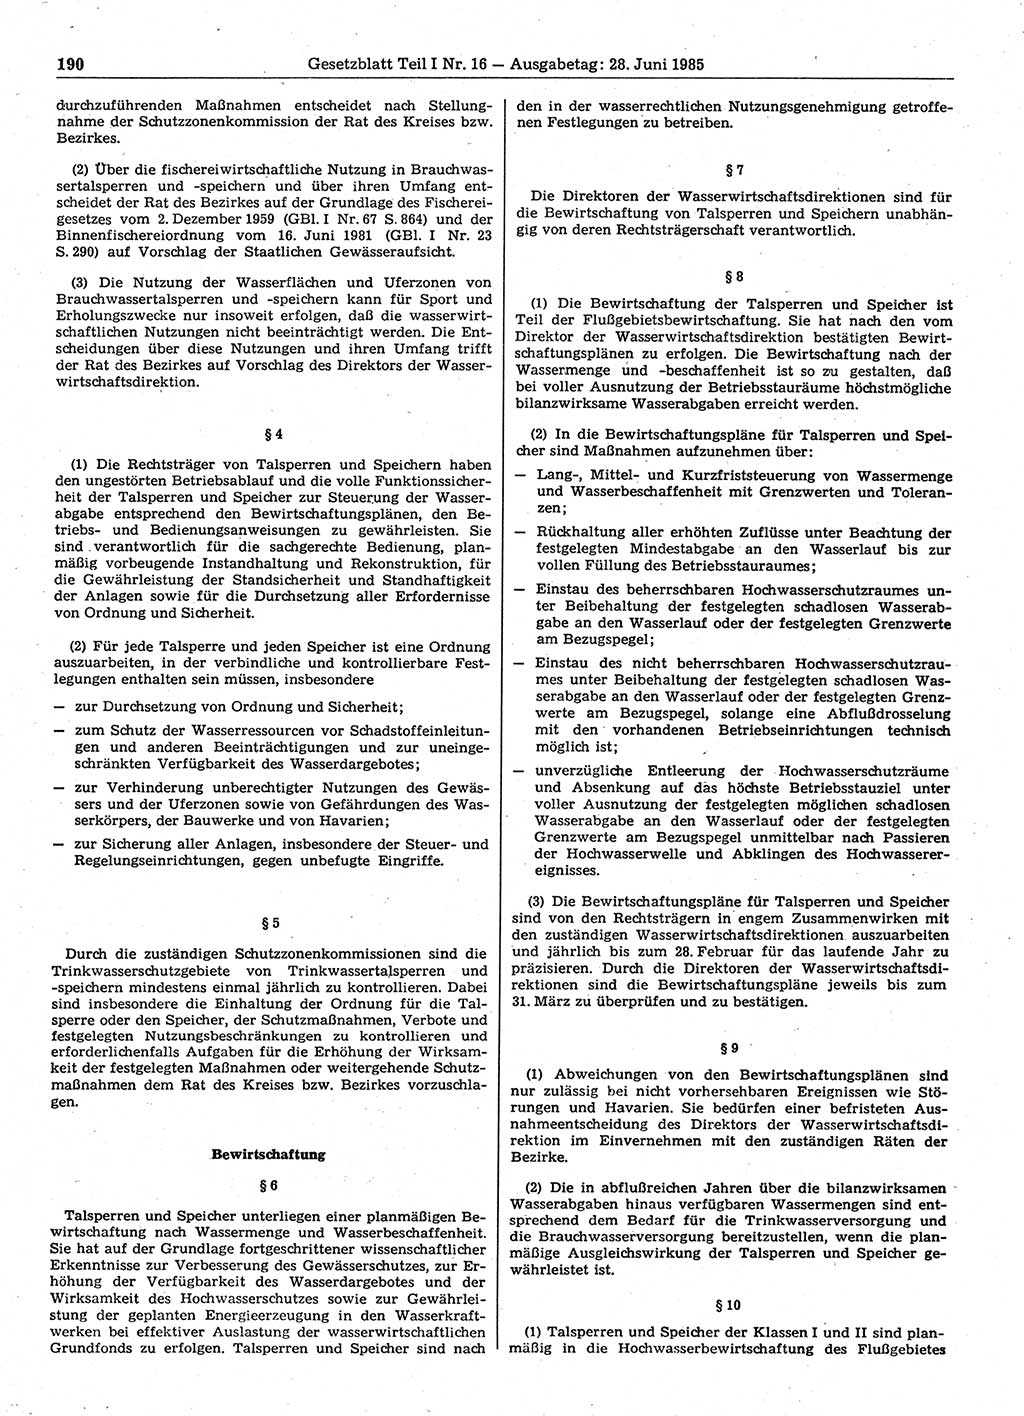 Gesetzblatt (GBl.) der Deutschen Demokratischen Republik (DDR) Teil Ⅰ 1985, Seite 190 (GBl. DDR Ⅰ 1985, S. 190)